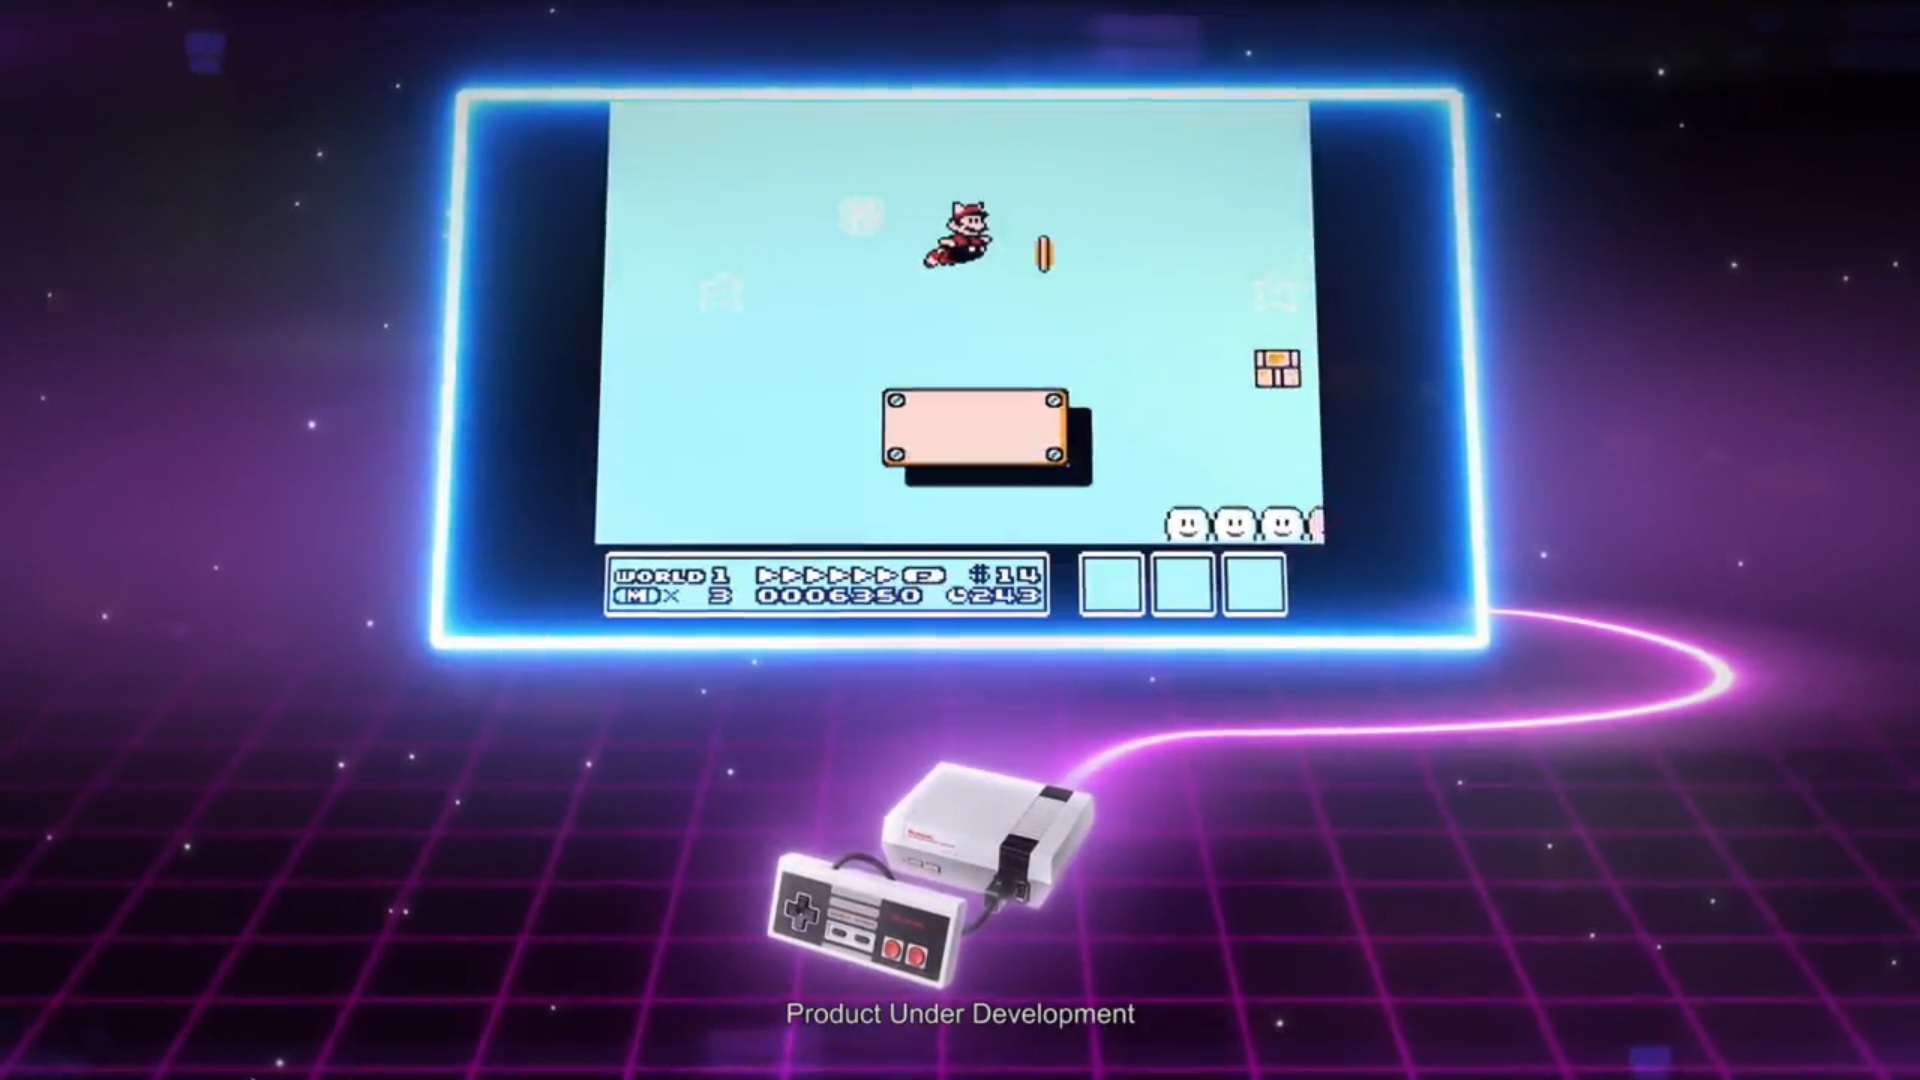 La NES Classic Edition ha sido hackeada y ahora se le pueden cargar juegos adicionales por cable USB